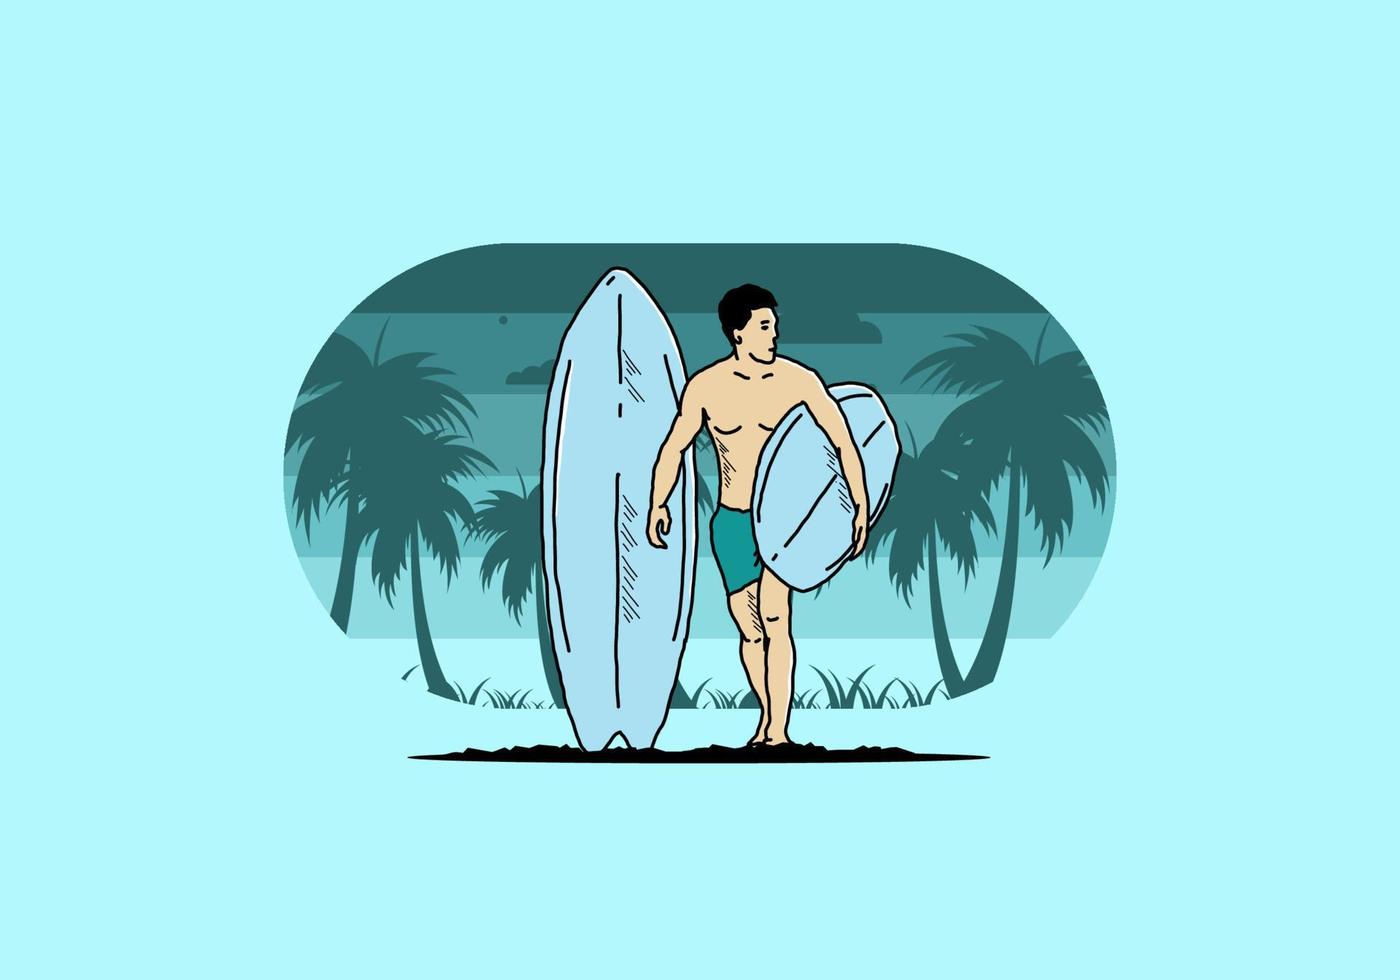 de shirtloze man met een surfplankillustratie vector